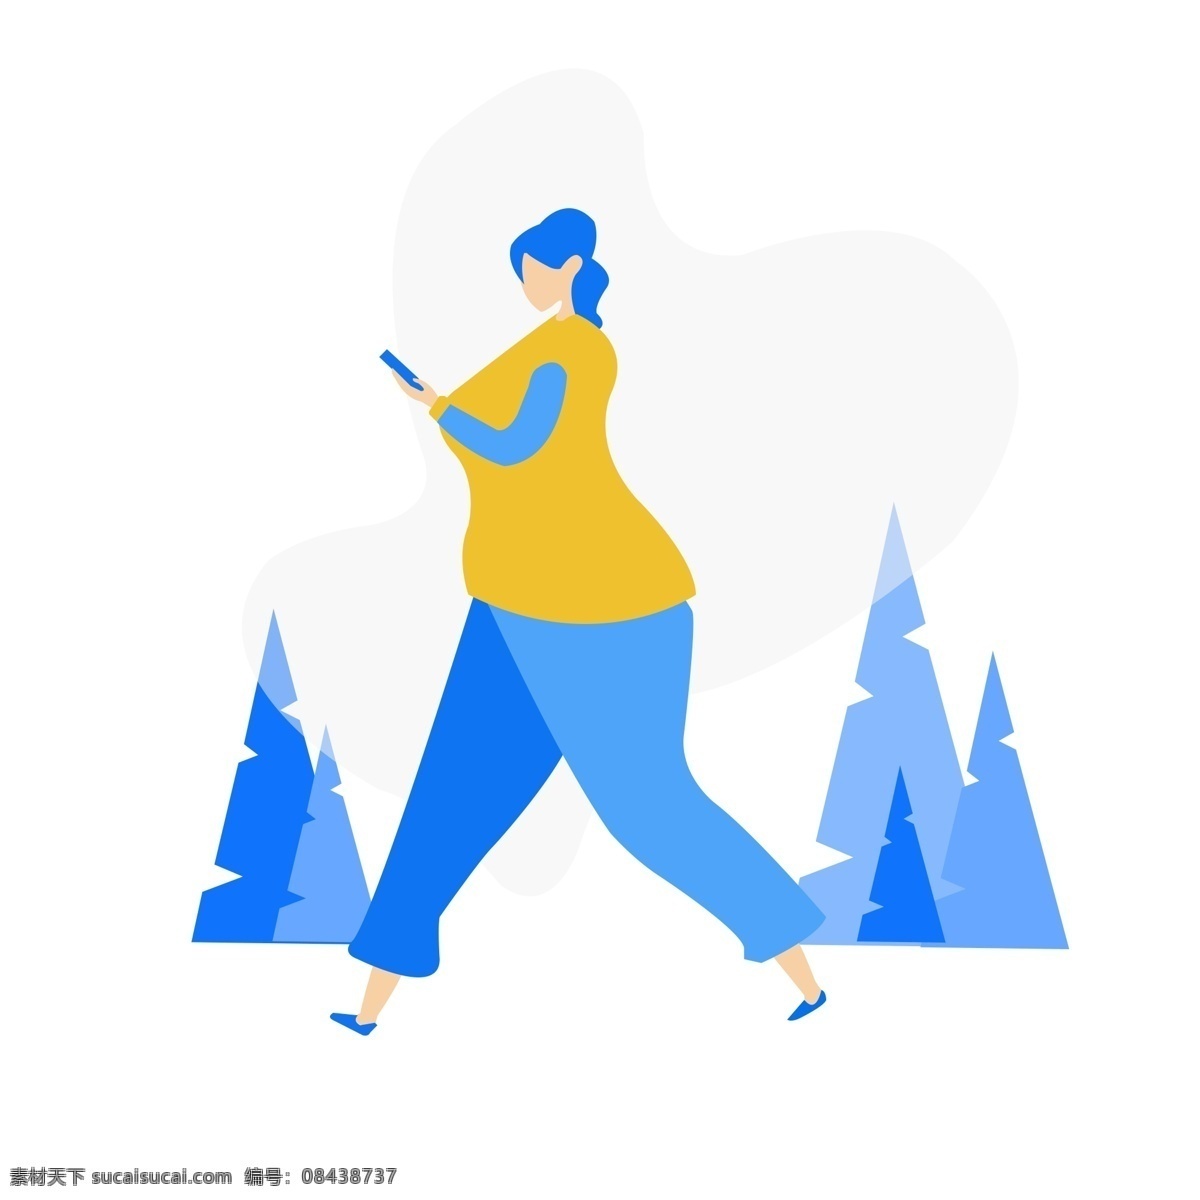 玩 手机 走路 女人 扁平化 夸张的 玩手机 矢量图 森林 ppt图标 人物 蓝色系